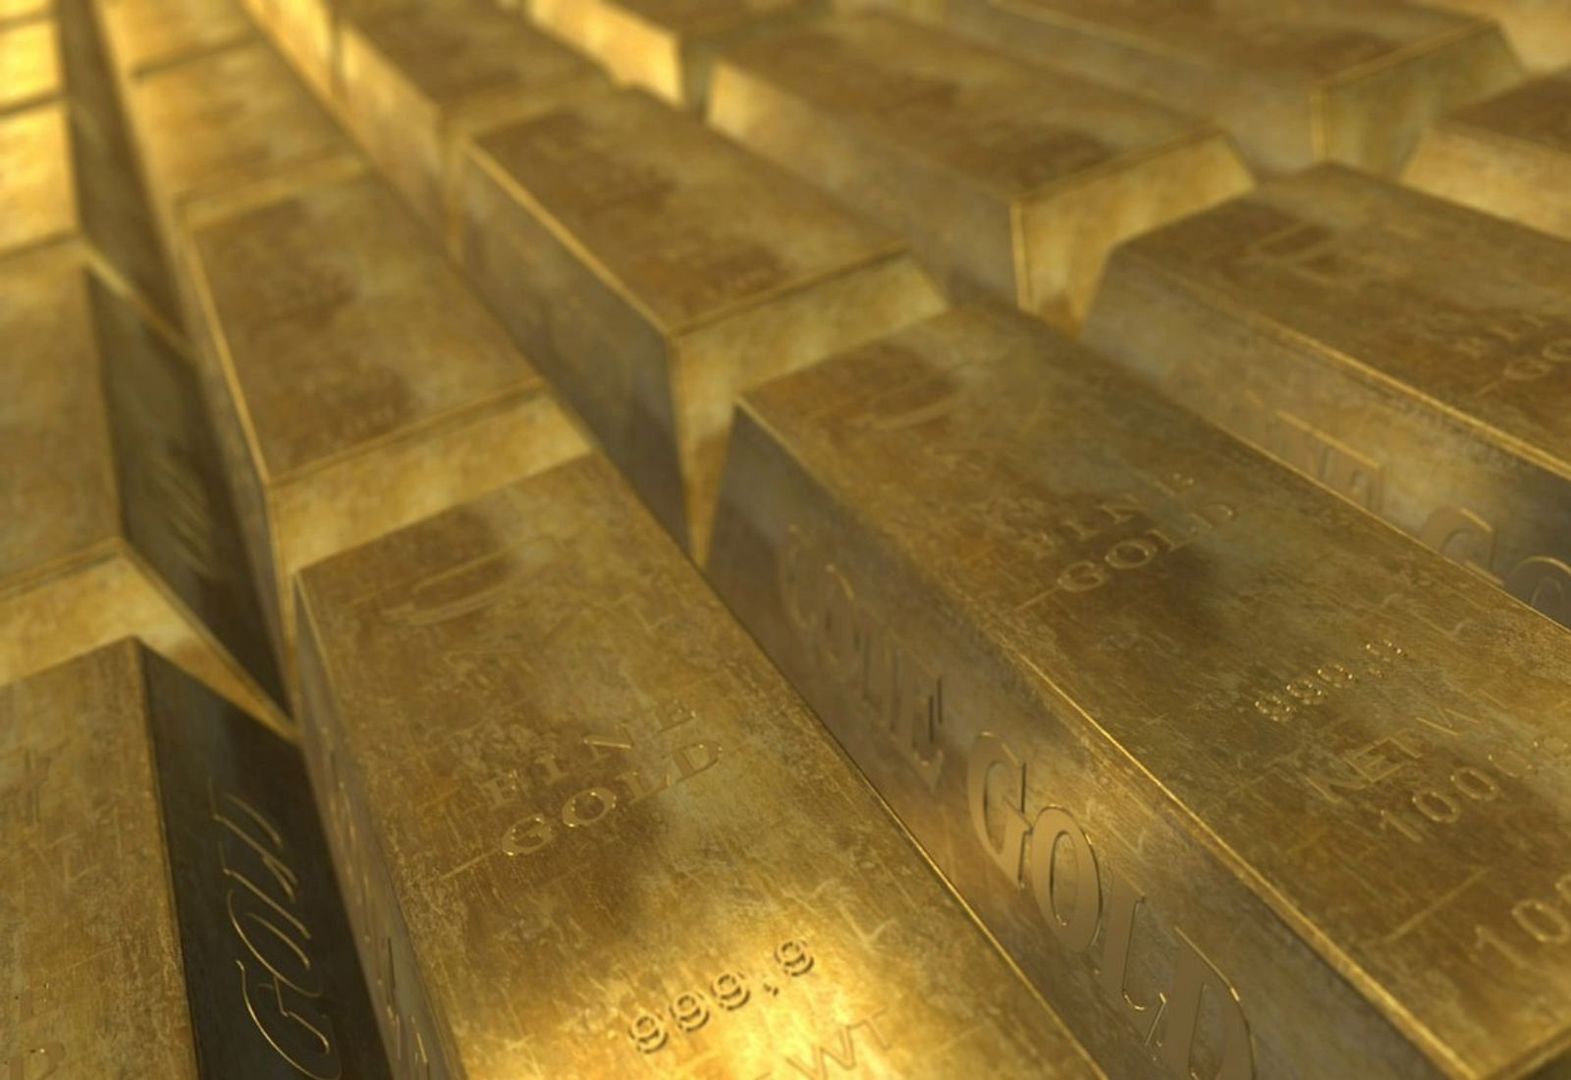 Konduktor znalazł w pociągu 120 sztabek złota. Wiadomo, komu zostaną one przekazane